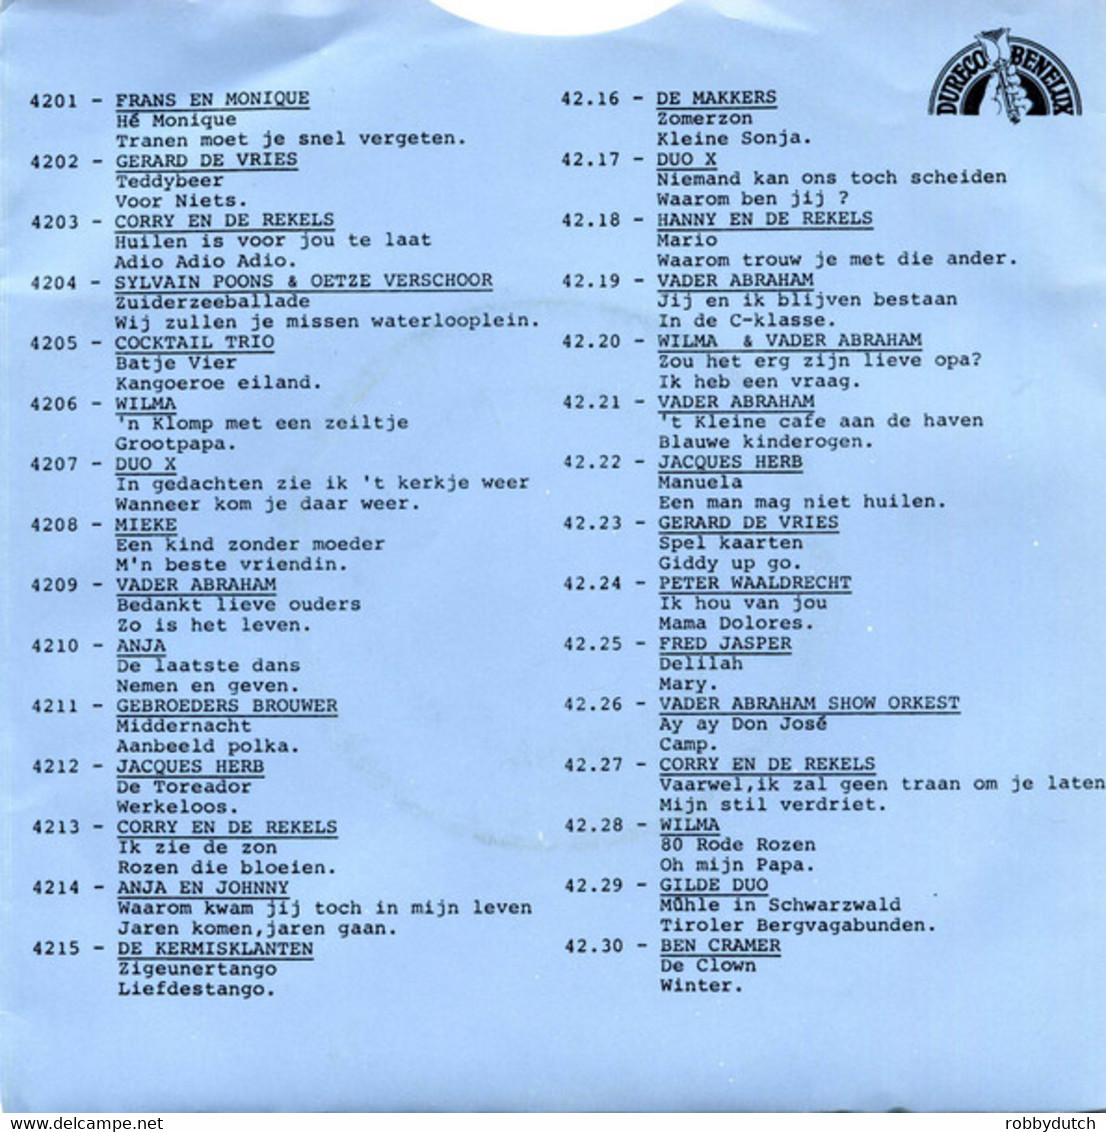 *7" * GERARD DE VRIES - SPEL KAARTEN (Holland 1976) - Autres - Musique Néerlandaise